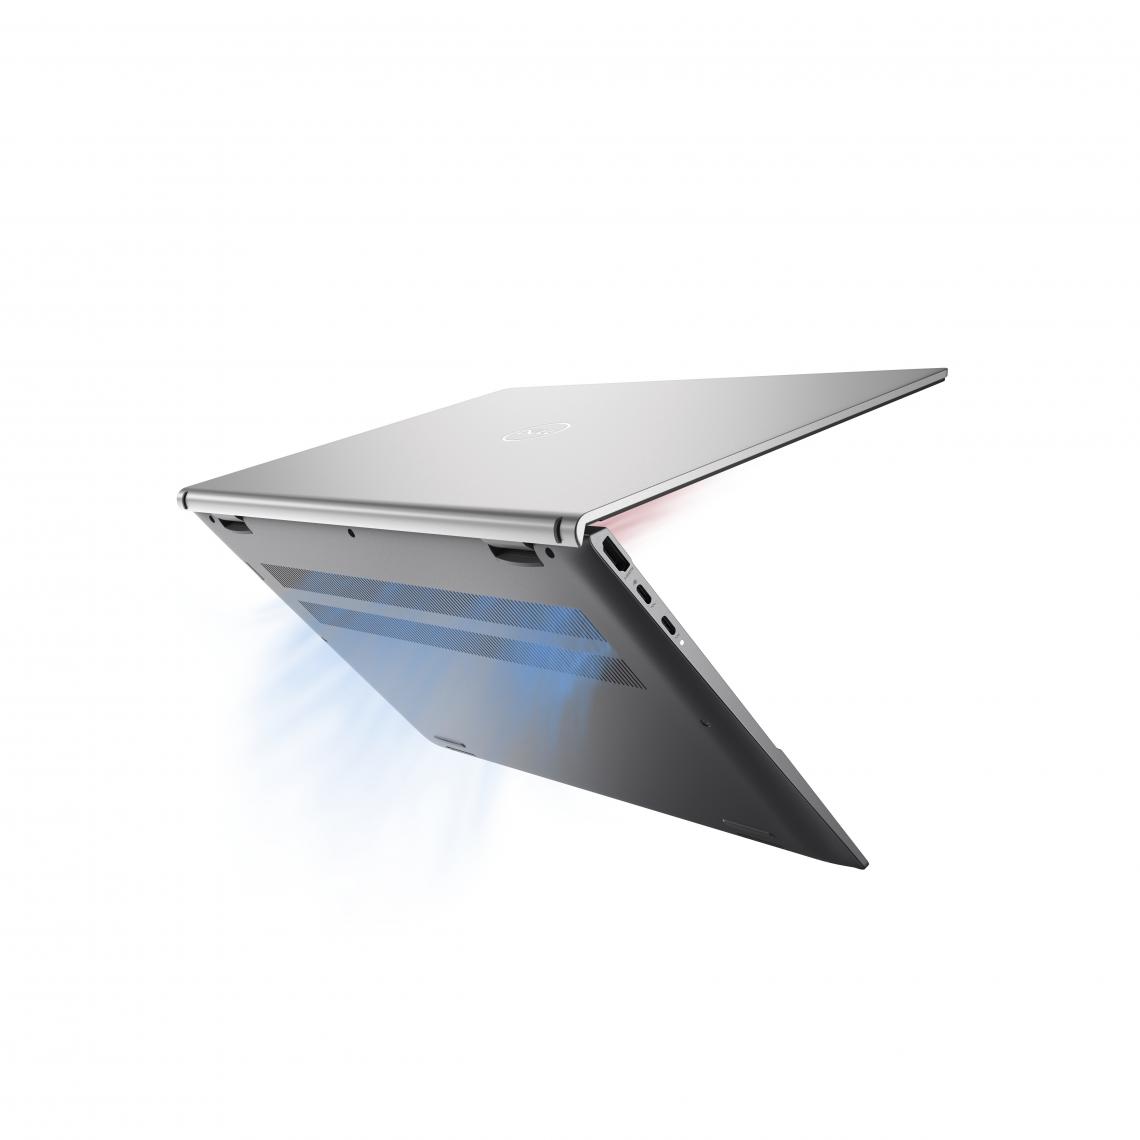 Dell - Inspiron 13 5310 Platinum Silver - PC Portable